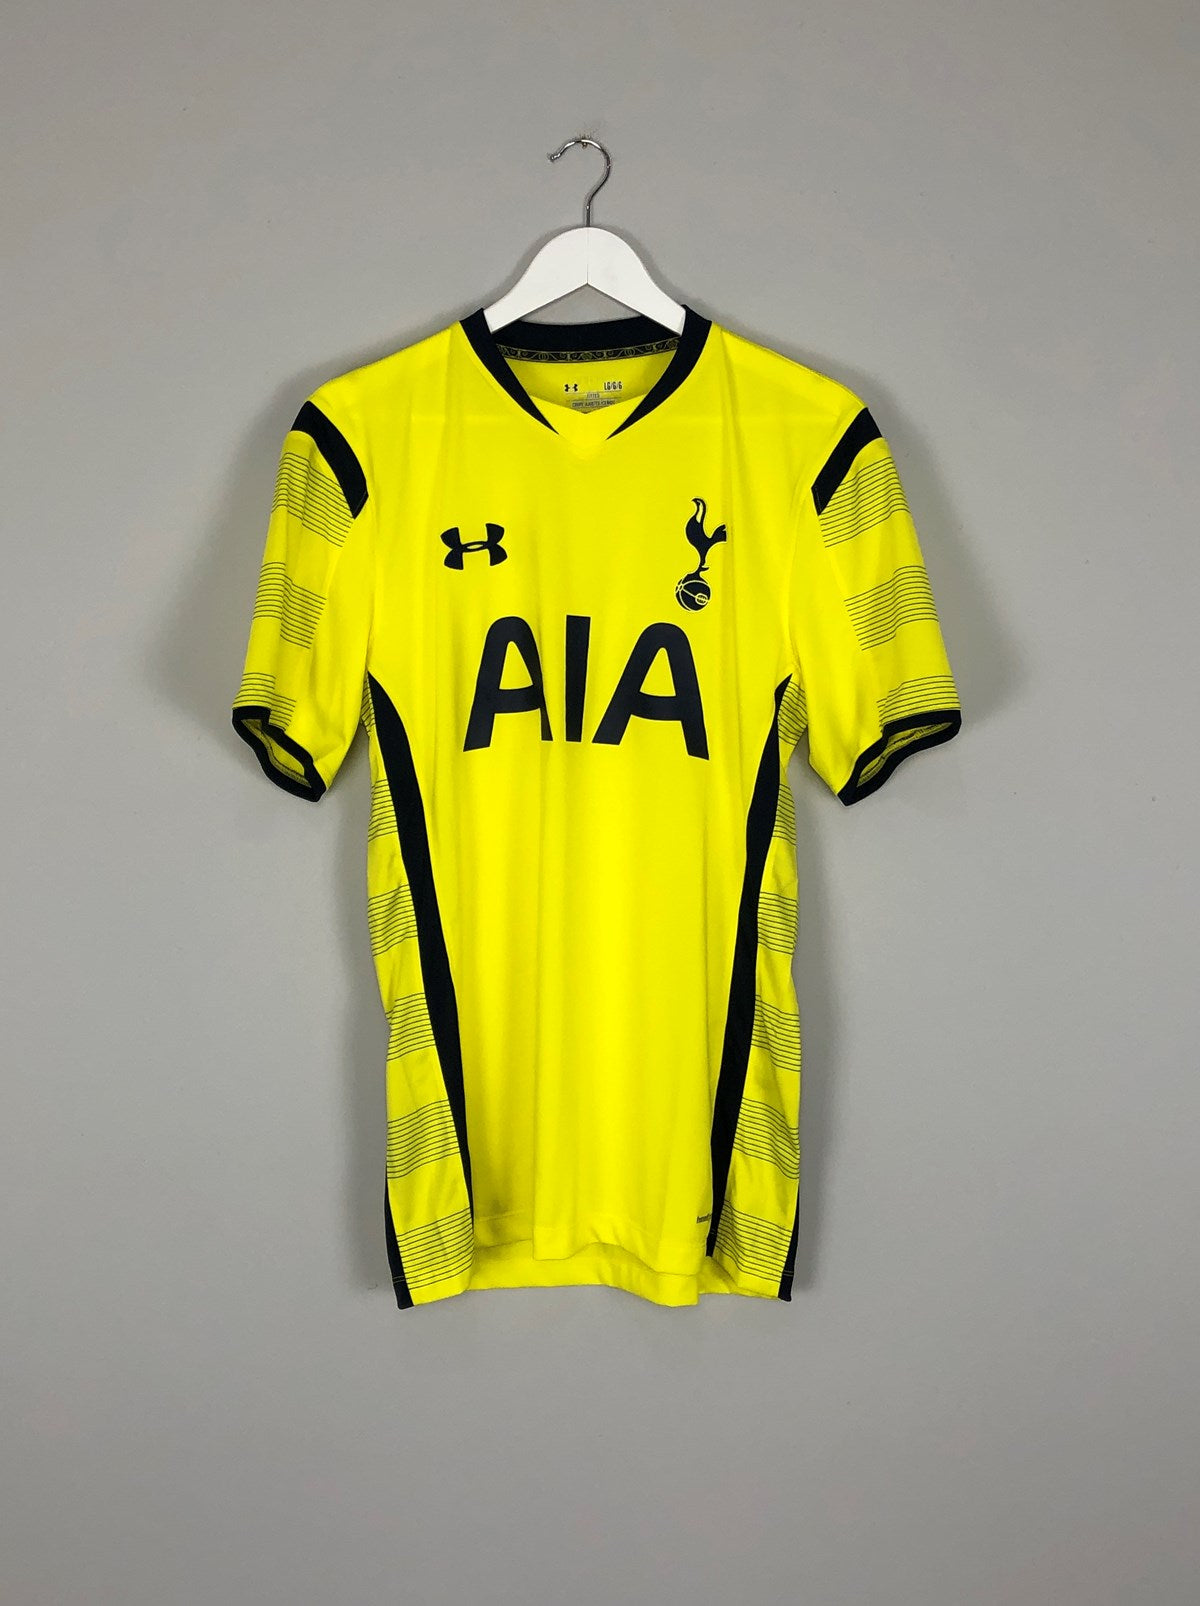 Tottenham Hotspur 2014/2015 home football shirt jersey Under